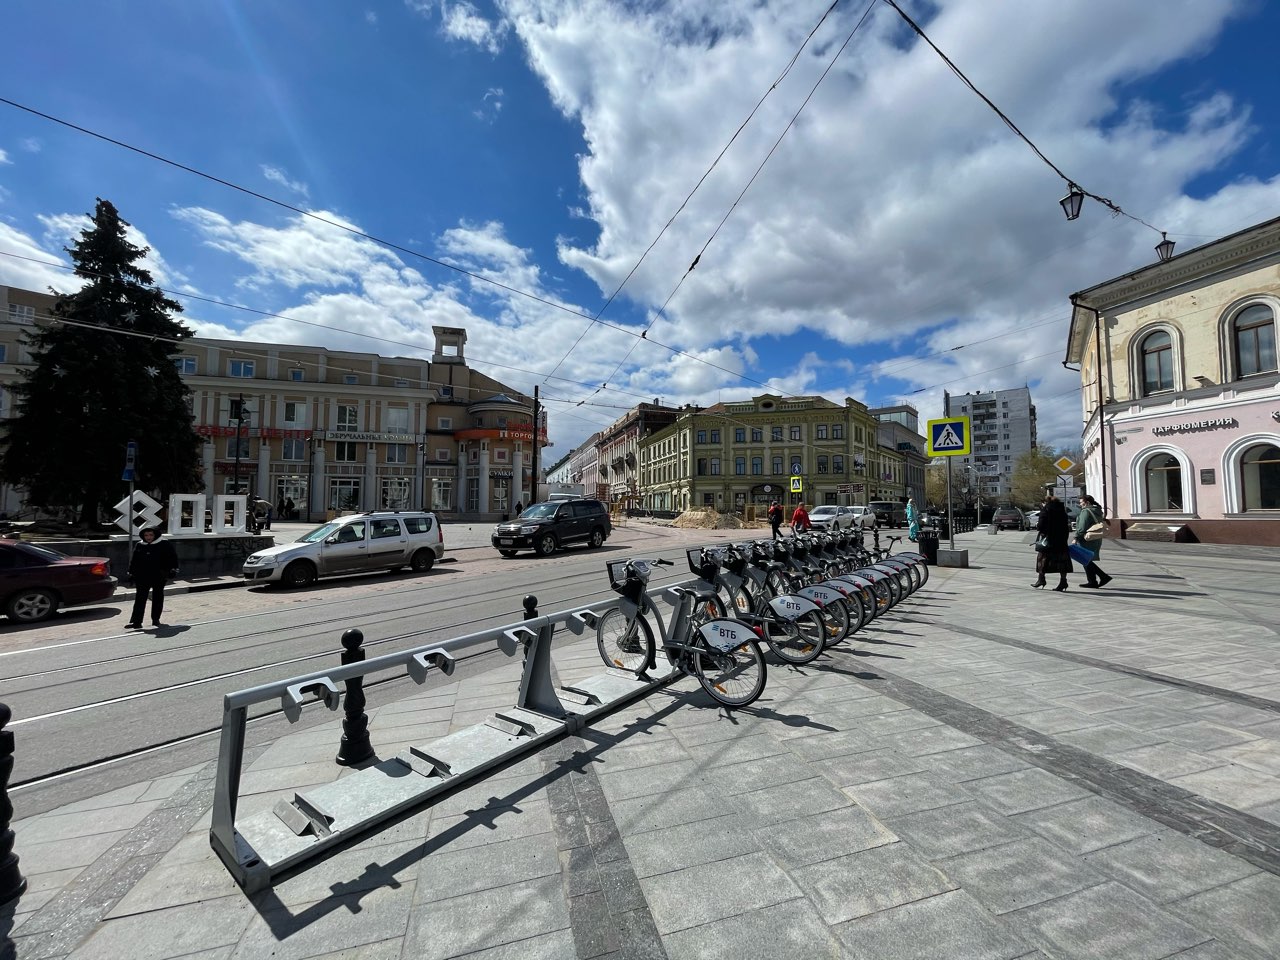 Амфитеатр начали монтировать в сквере Свердлова в Нижнем Новгороде - фото 1